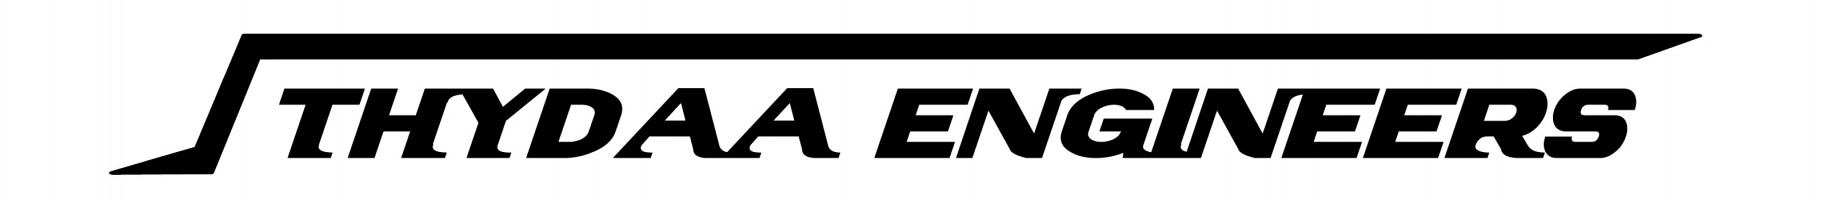 THYDAA ENGINEERS SDN BHD company logo